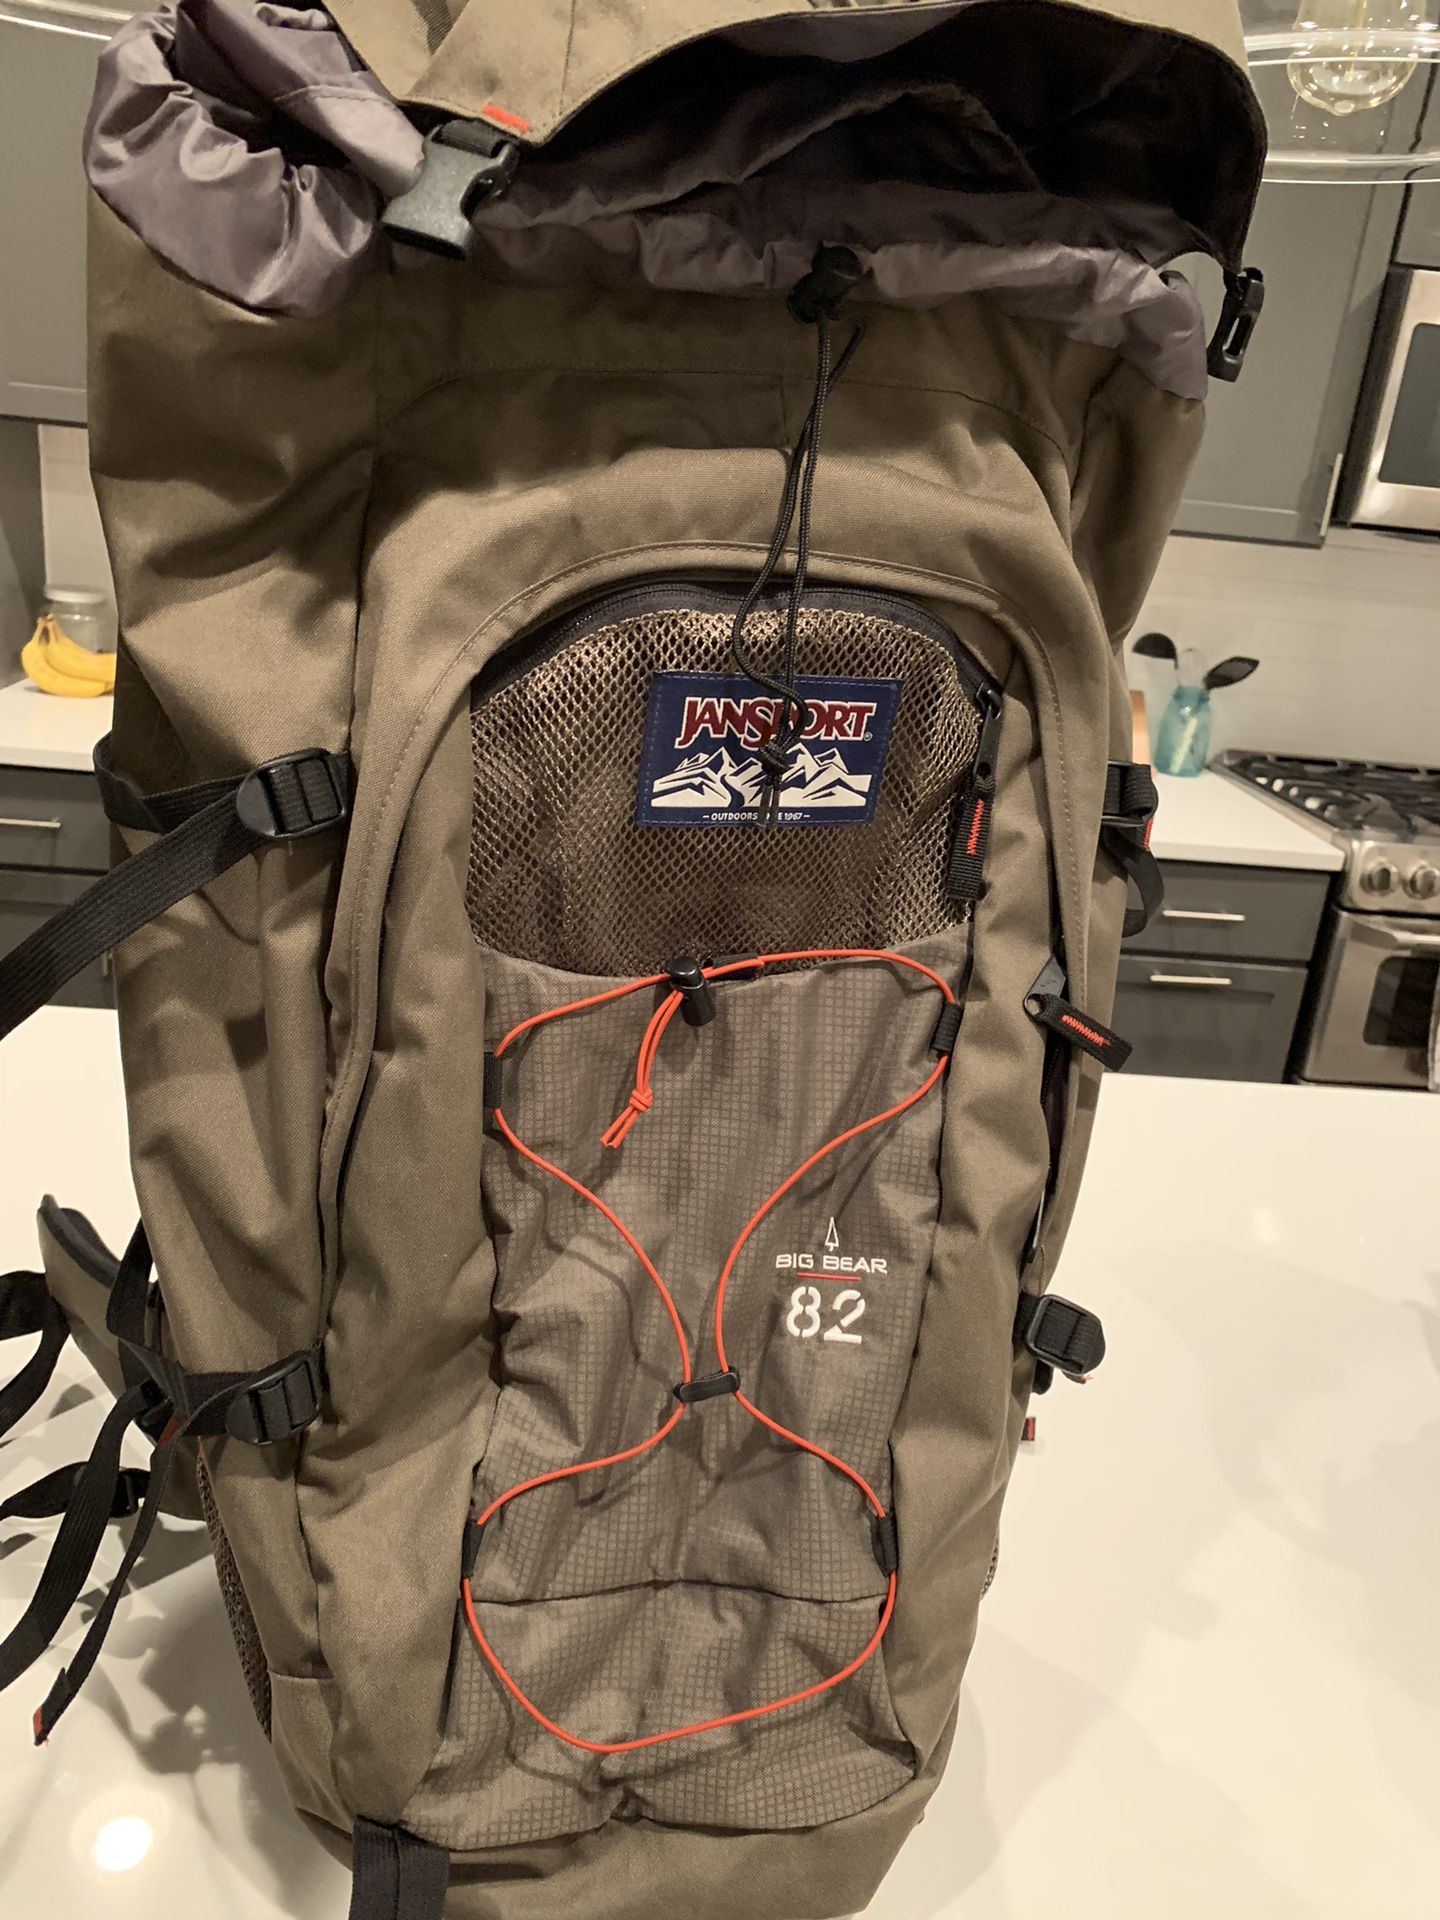 JanSport Professional Hiking Backpack